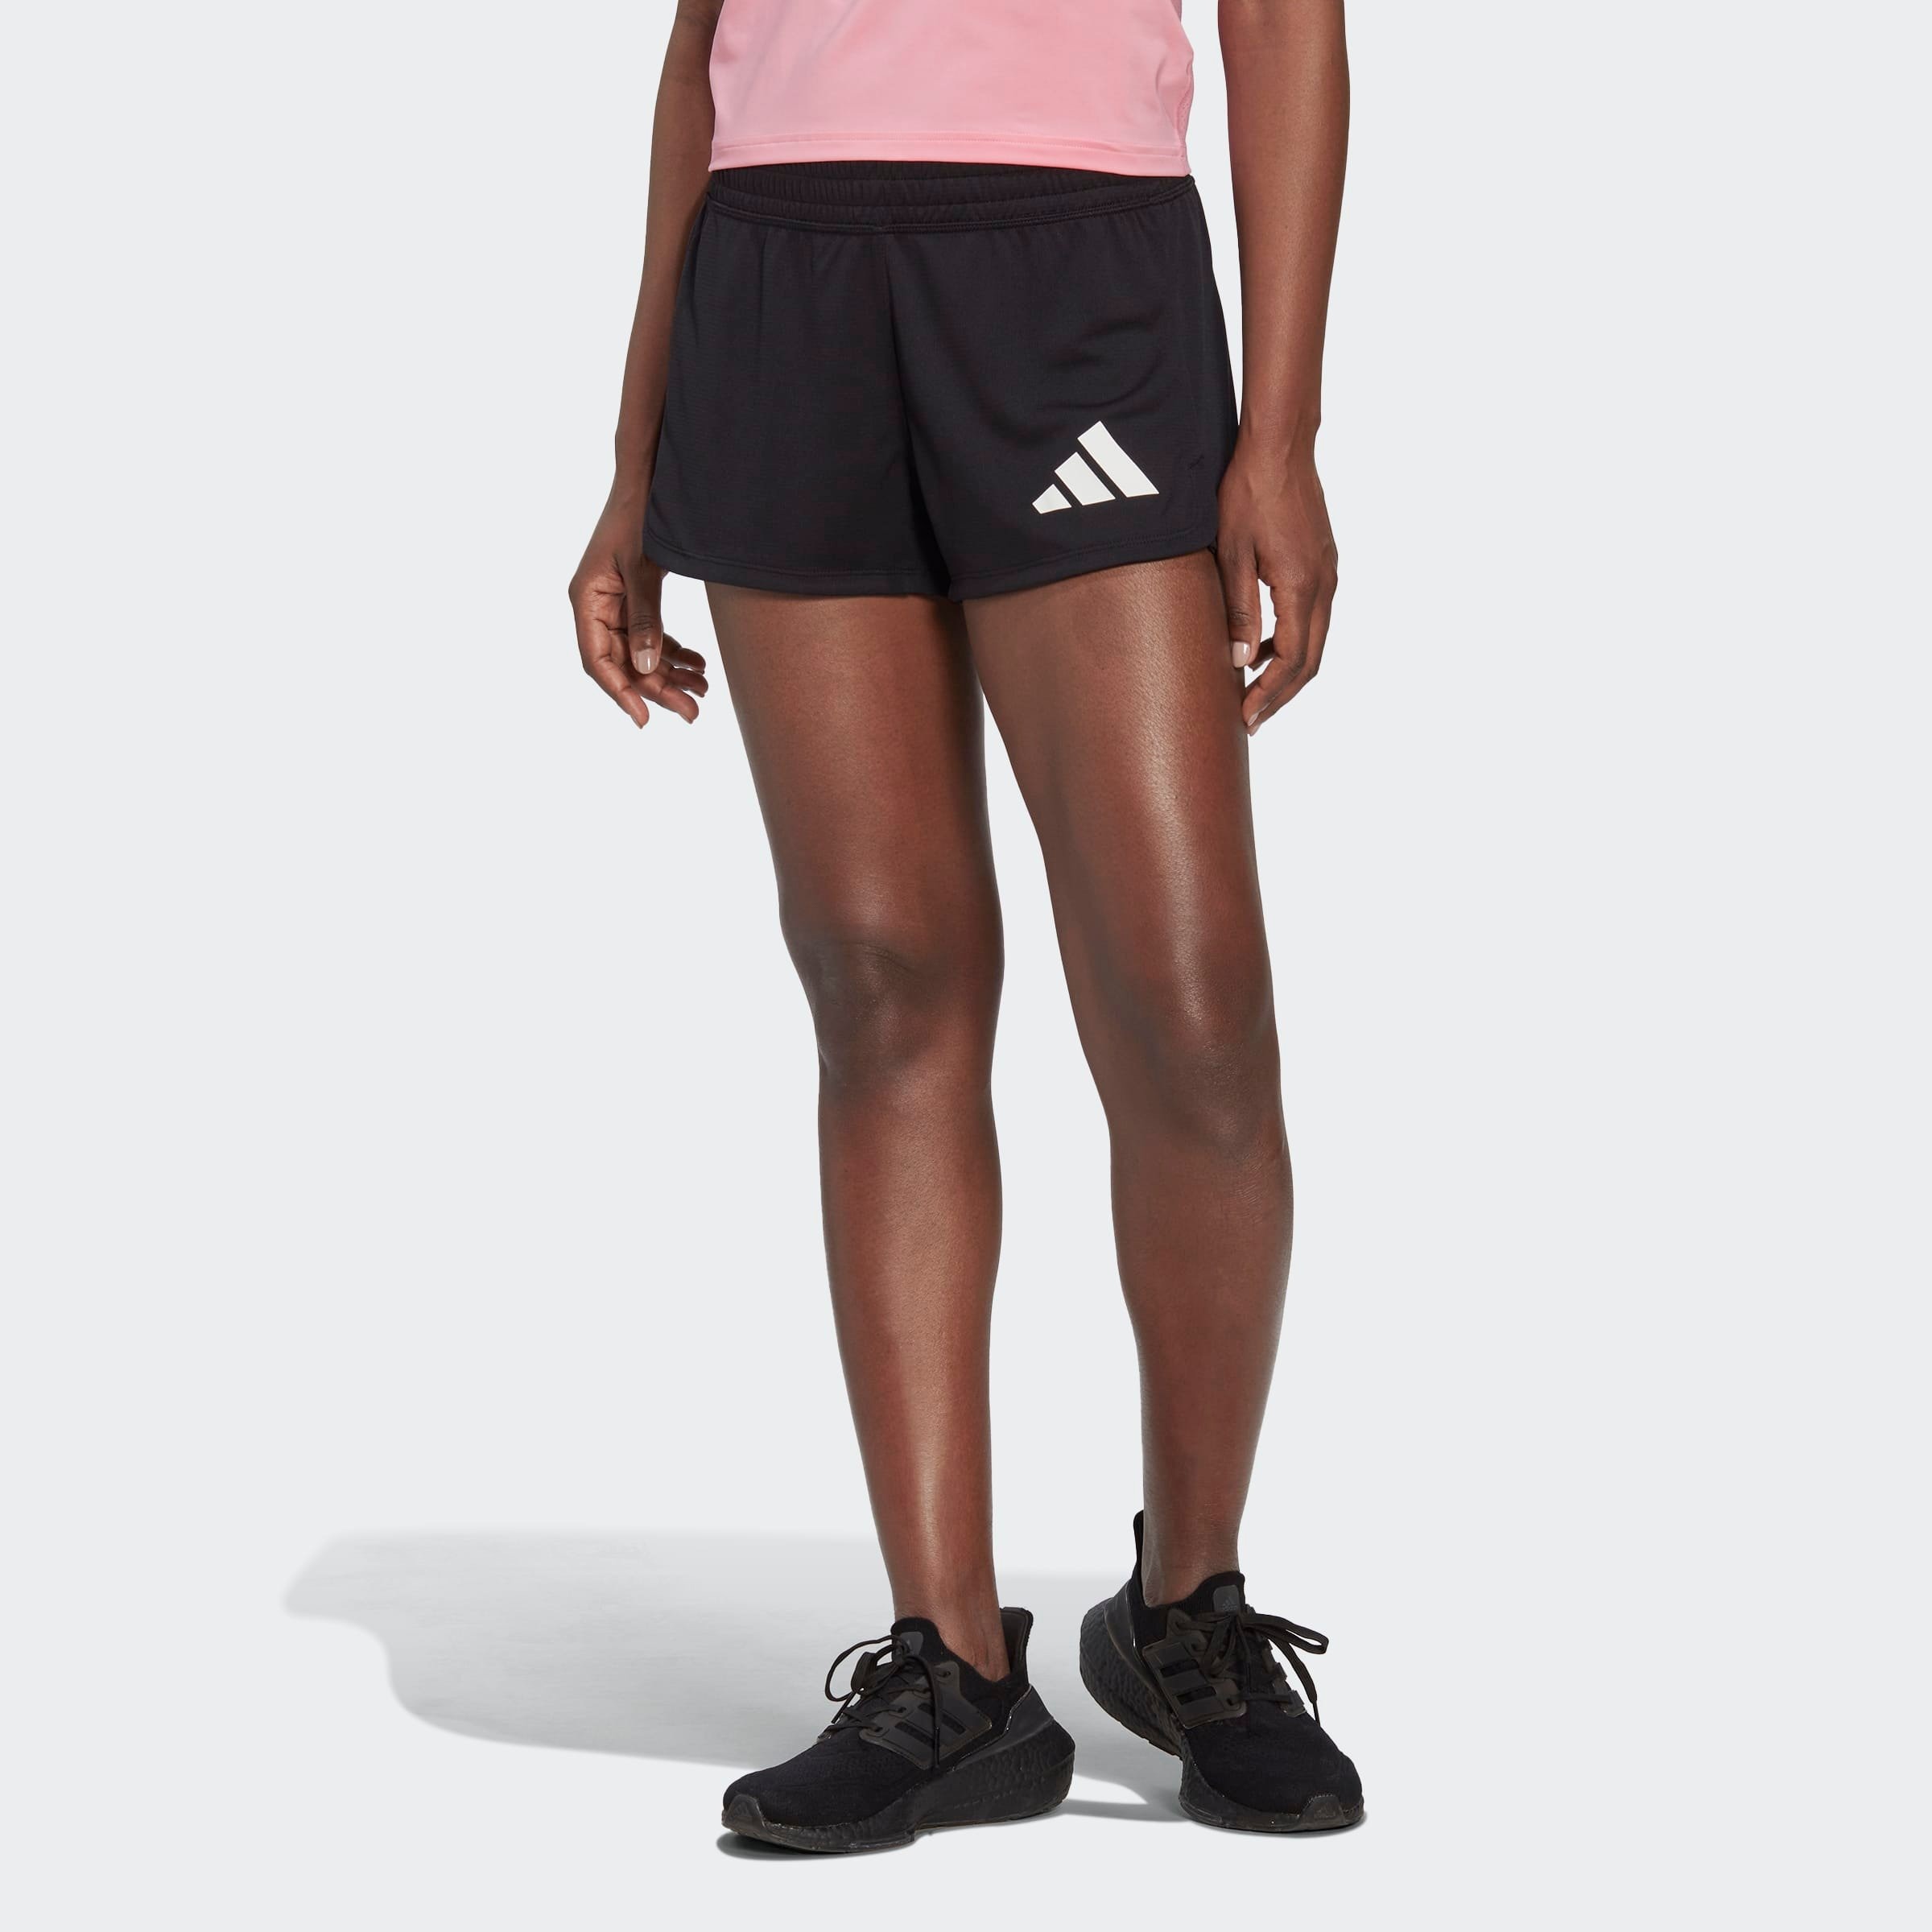 adidas Adidas pacer 3-bar knit sportbroekje zwart dames dames